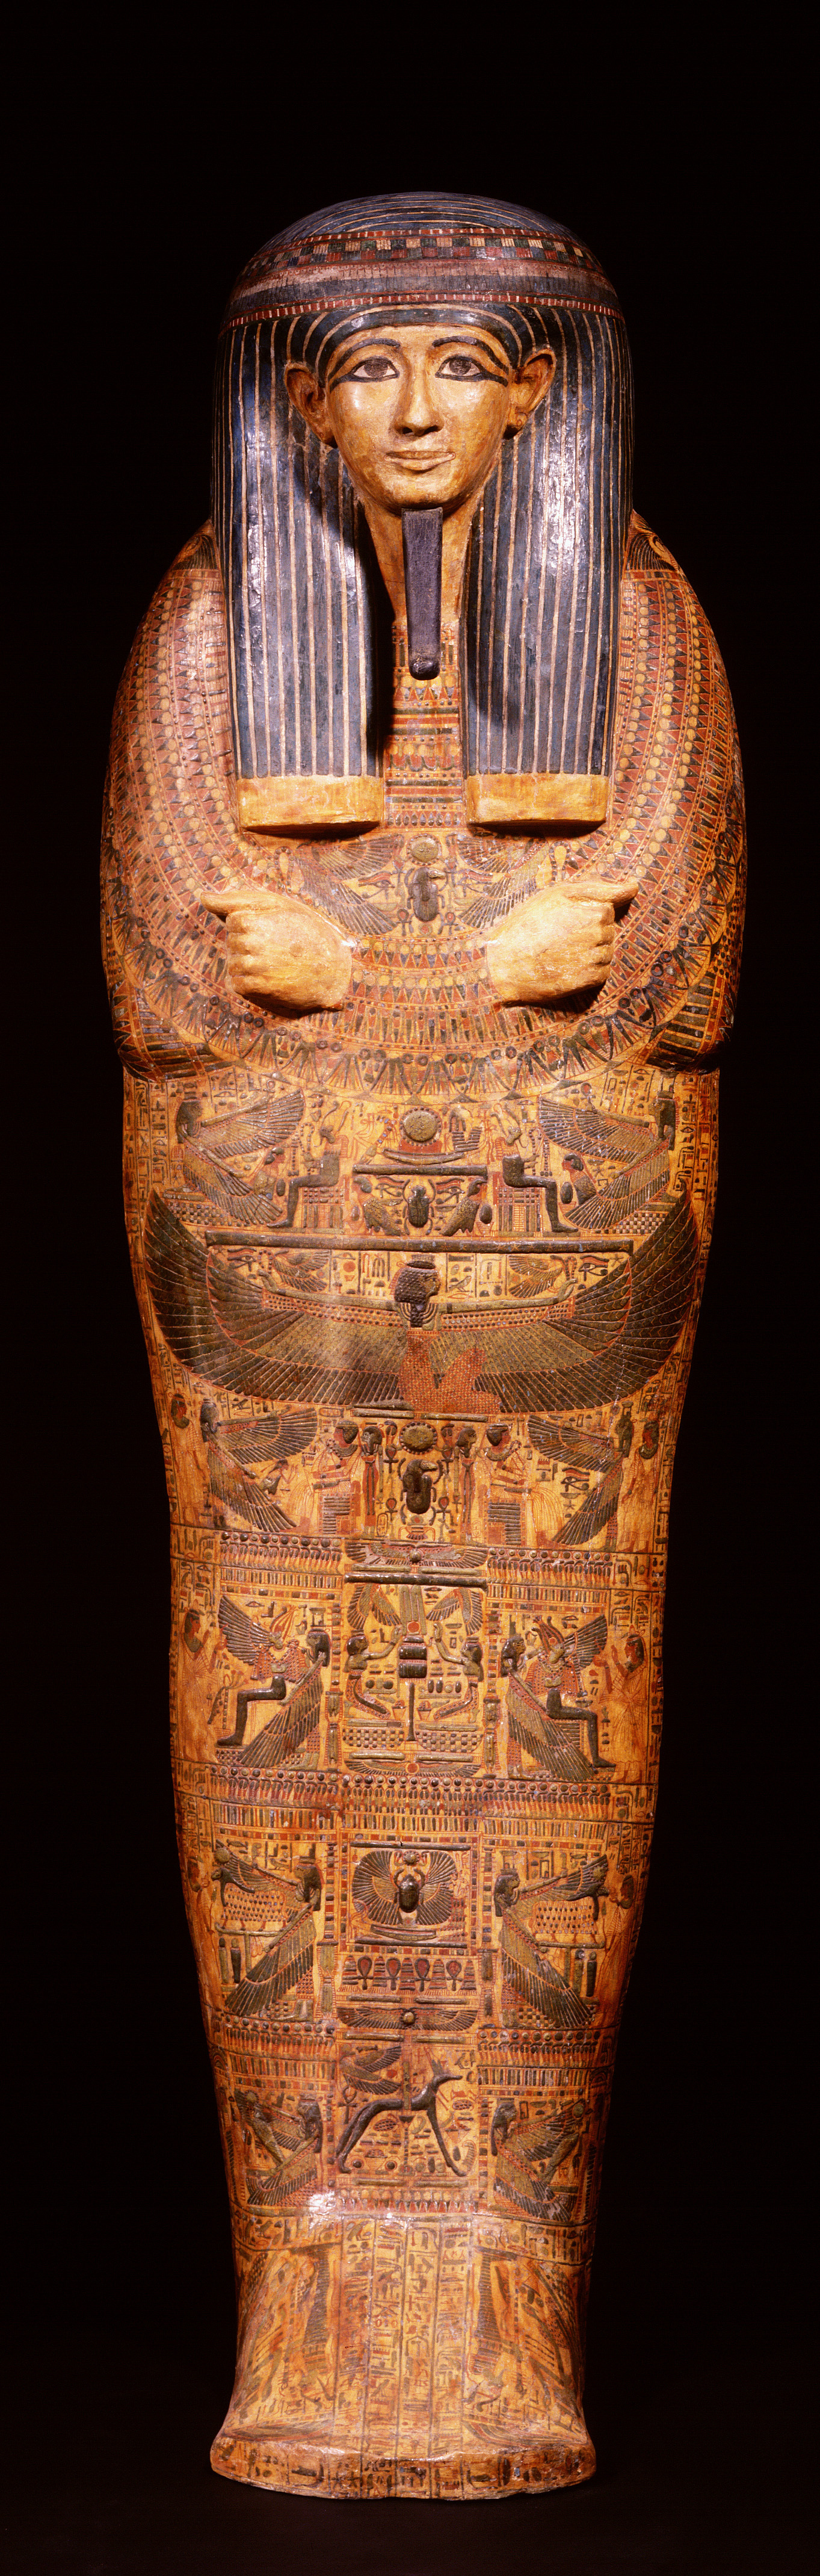 『ライデン国立古代博物館所蔵 古代エジプト展』「アメンヘテプの内棺」